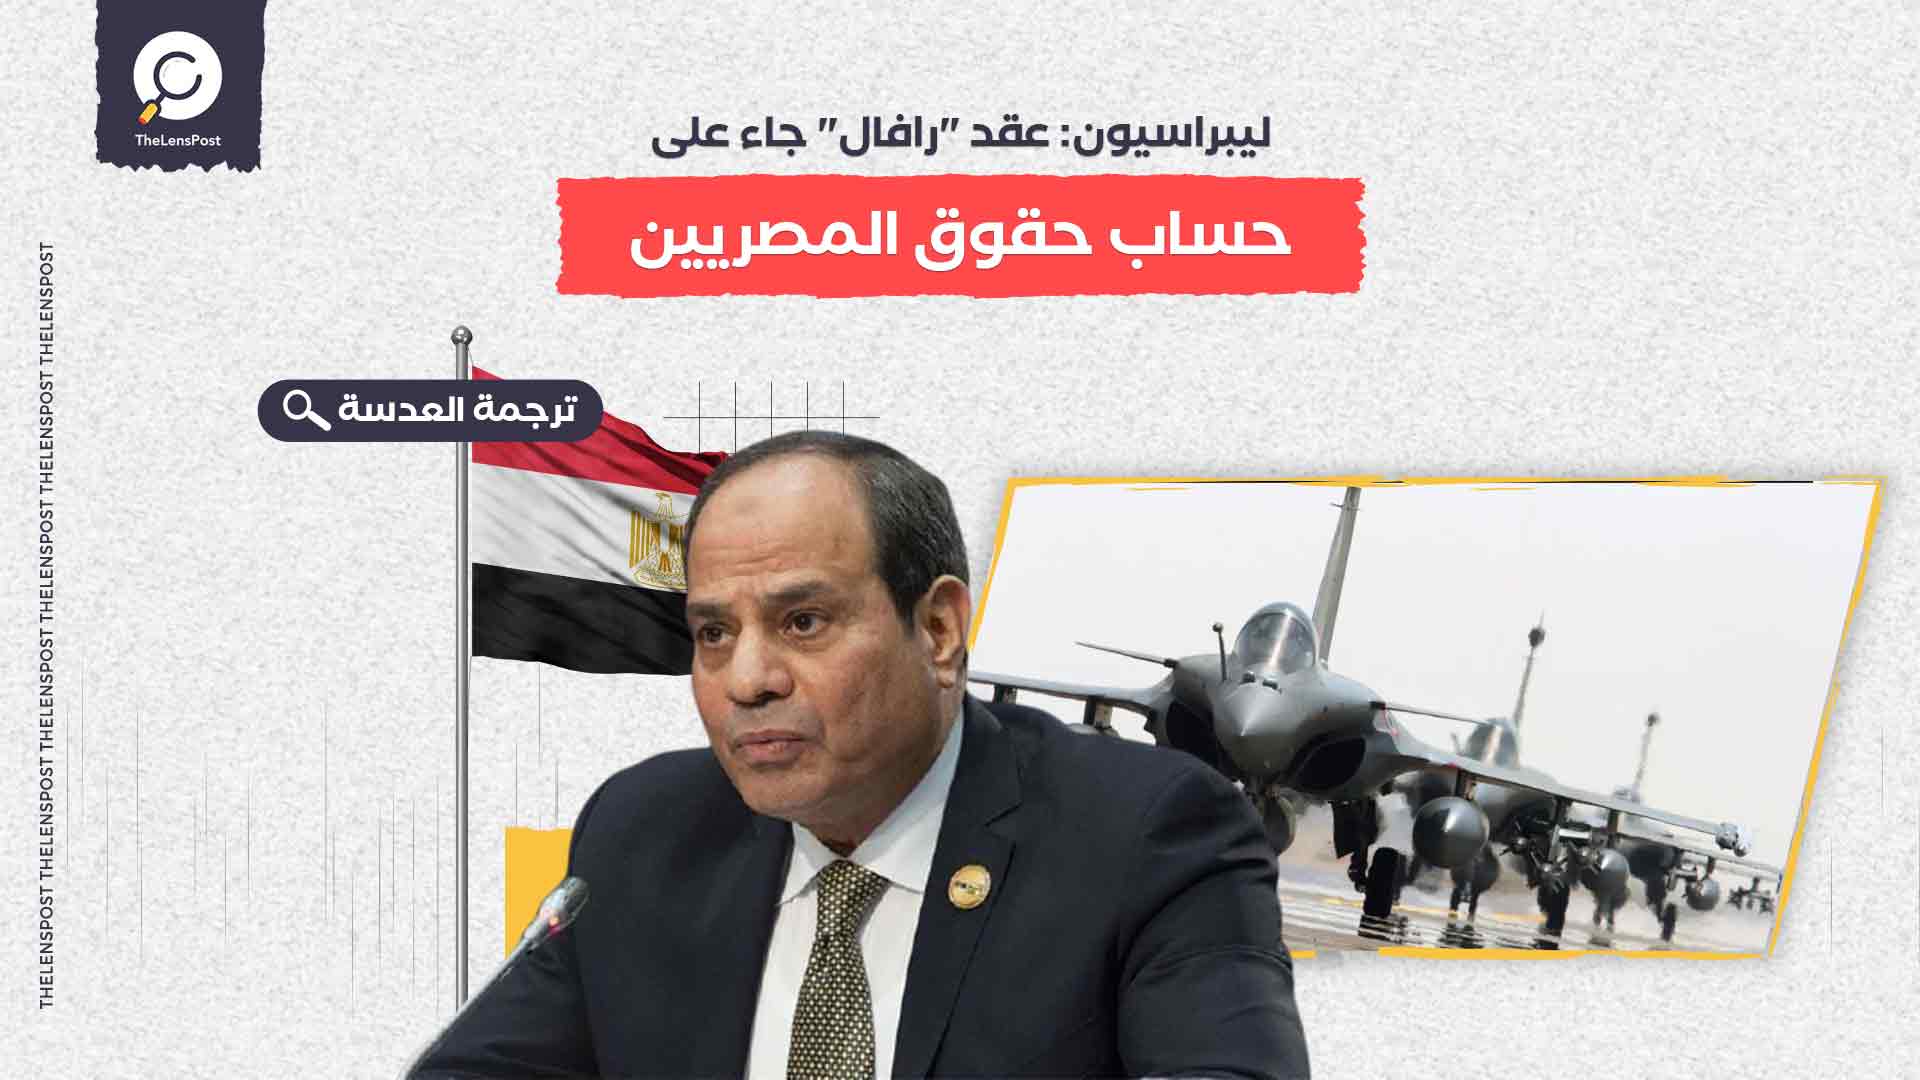 ليبراسيون: عقد "رافال" جاء على حساب حقوق المصريين